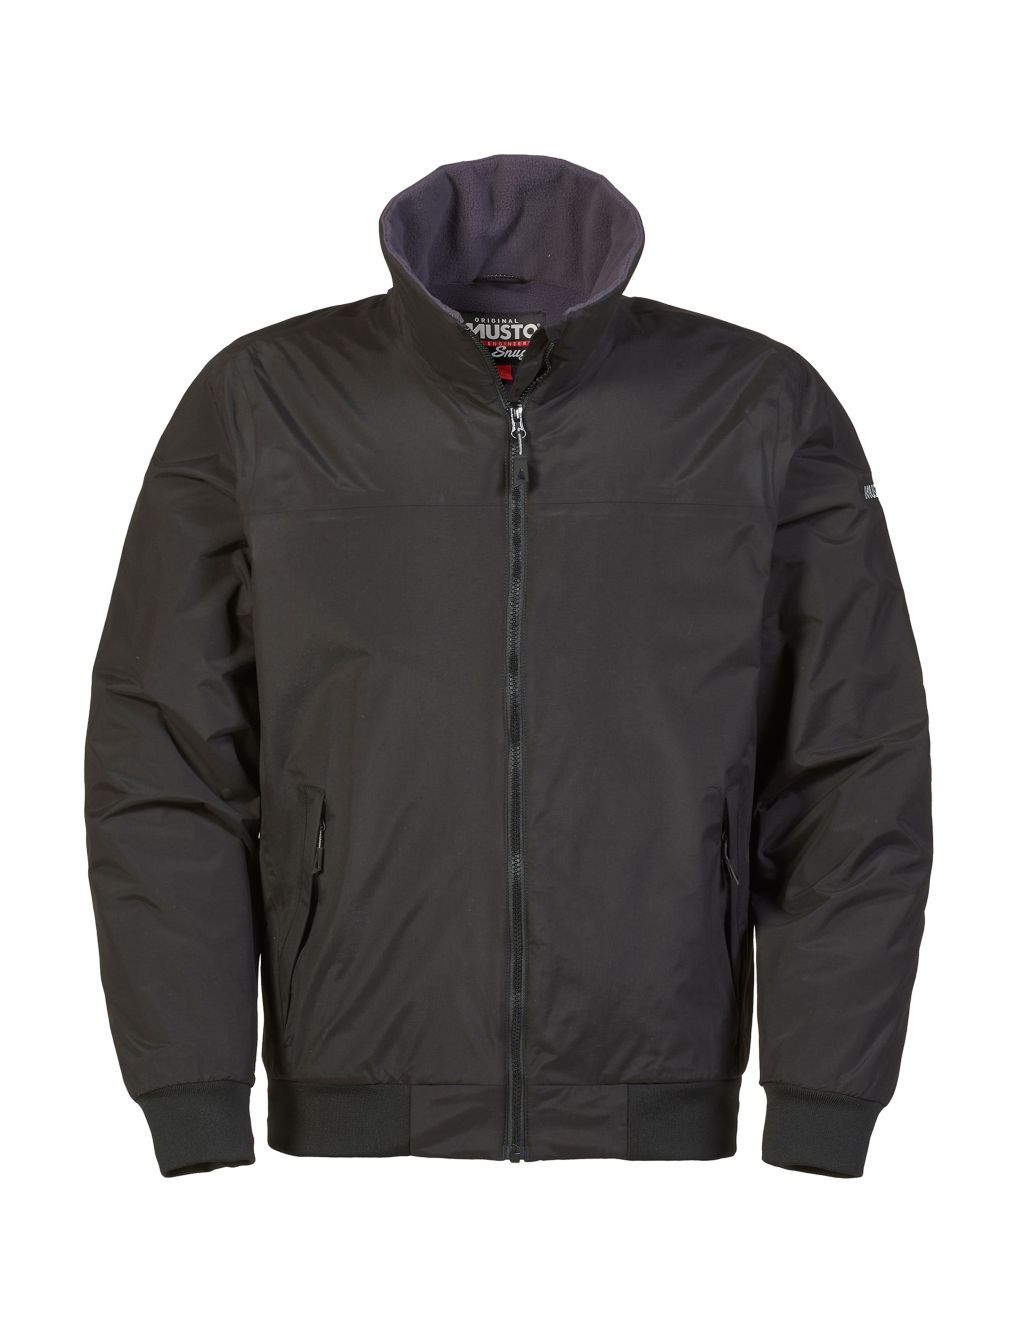 Snug Fleece Lined Jacket image 2